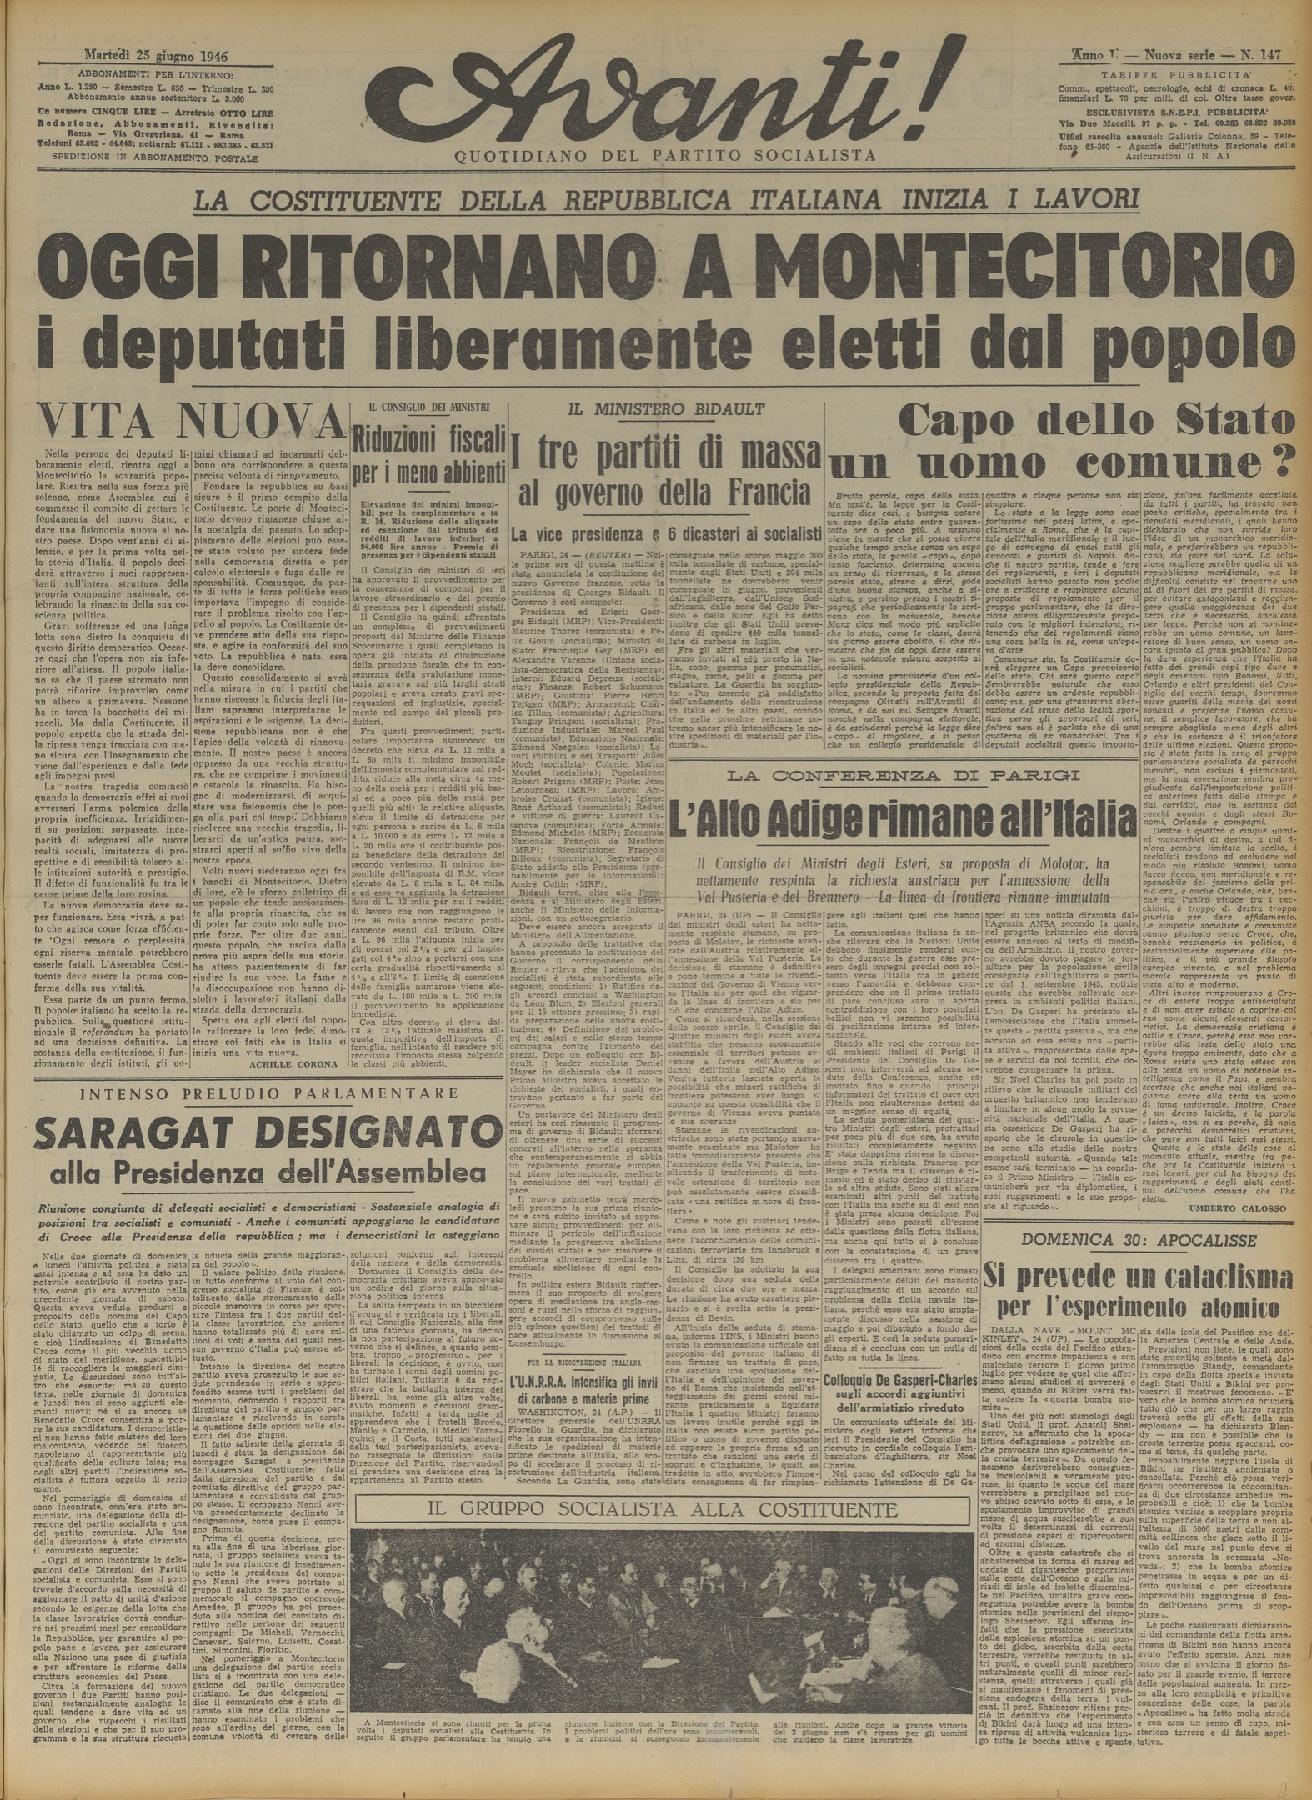 25 giugno 1946 - Prima pagina del quotidiano "Avanti!"